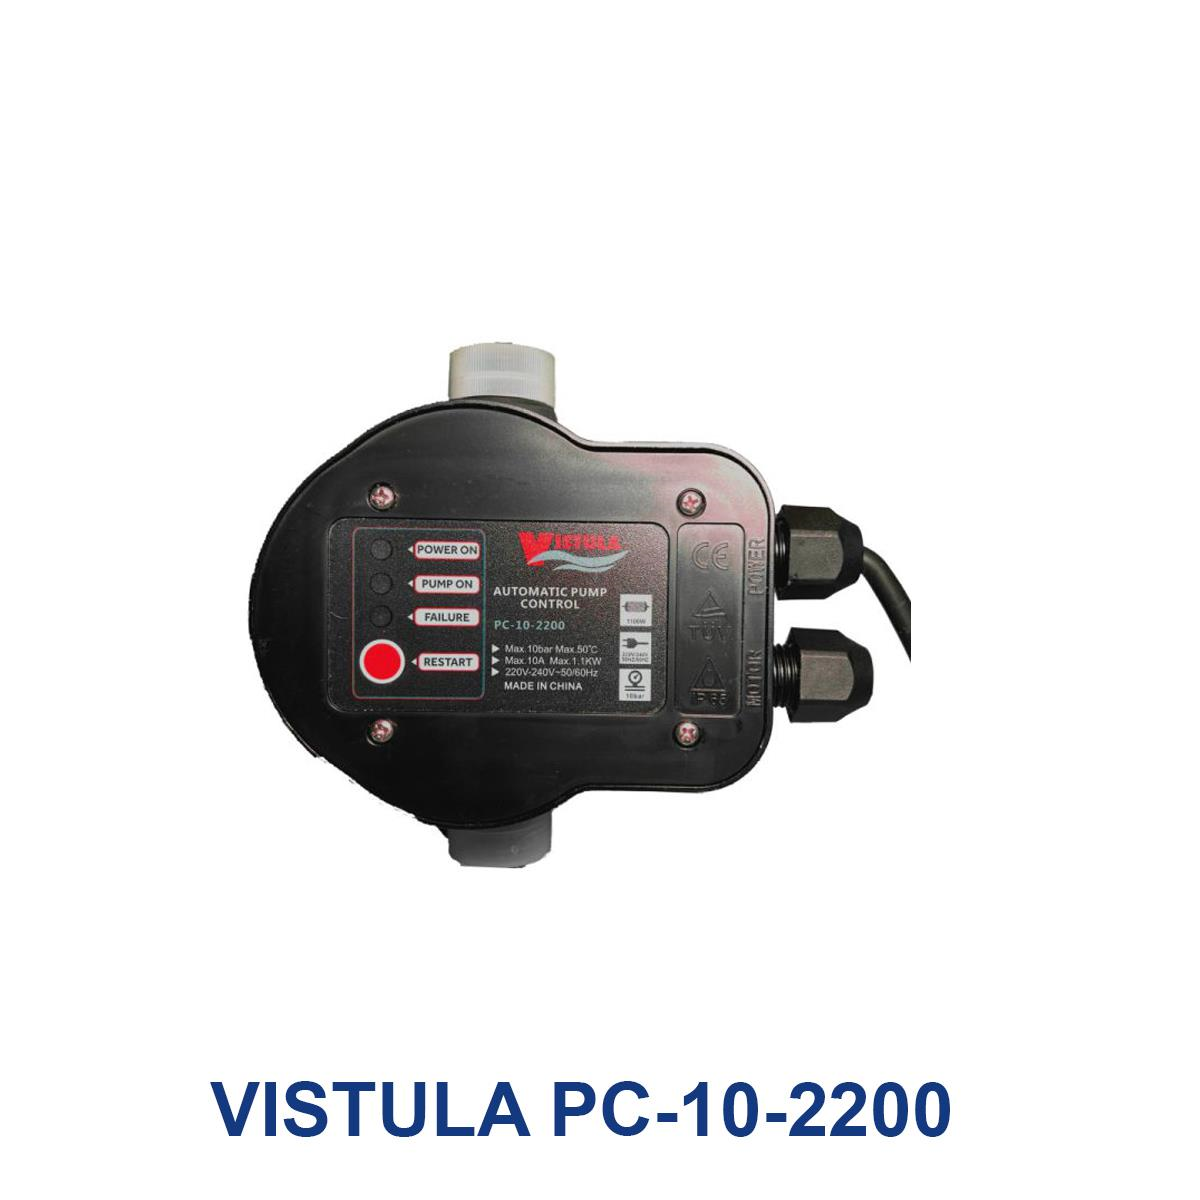 VISTULA-PC-10-2200